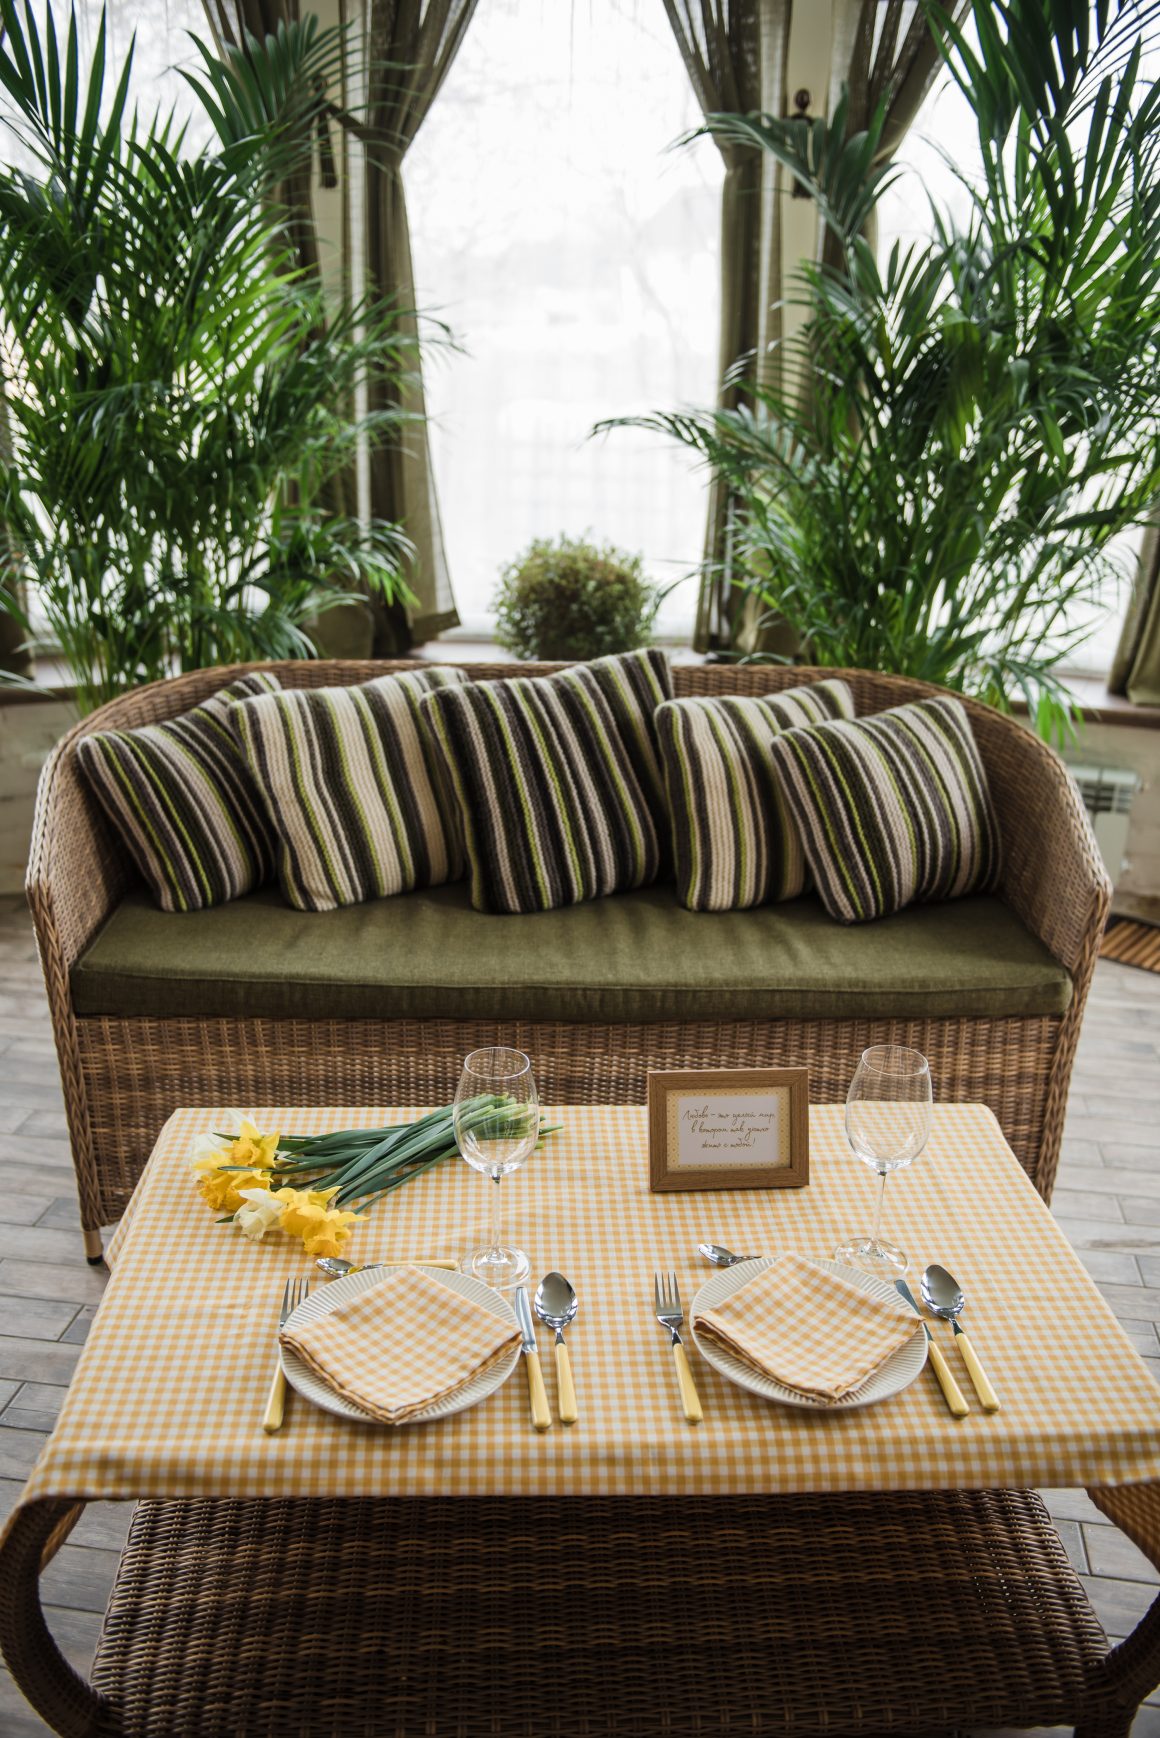 une table en rotin entourée de plantes luxuriantes, illustrant une décoration tropicale